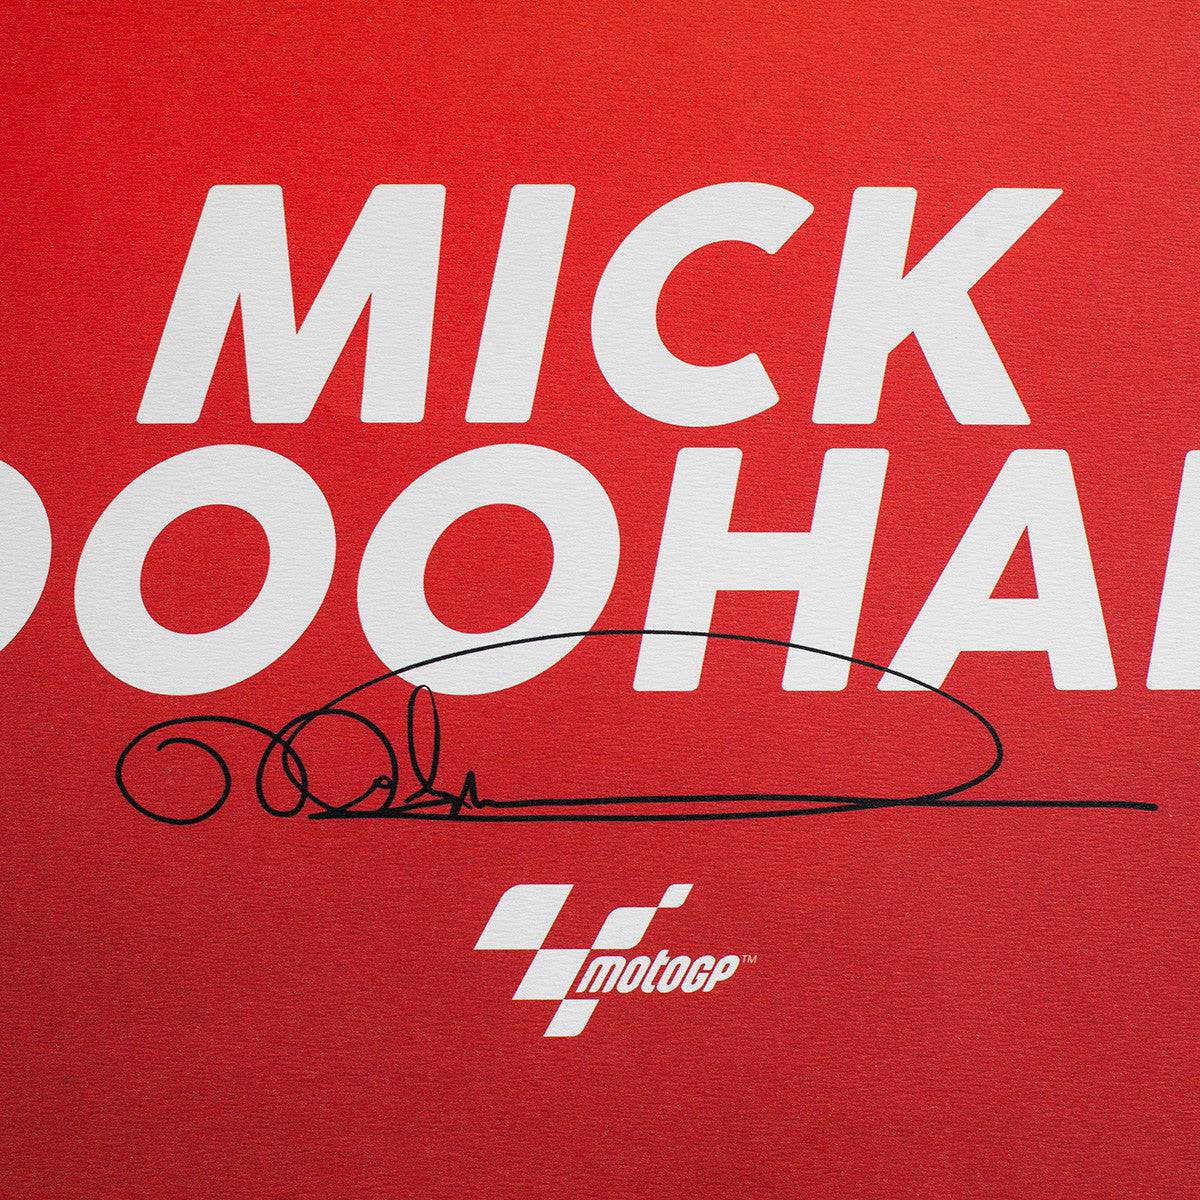 Mick Doohan - Helmet - 1999 - Poster